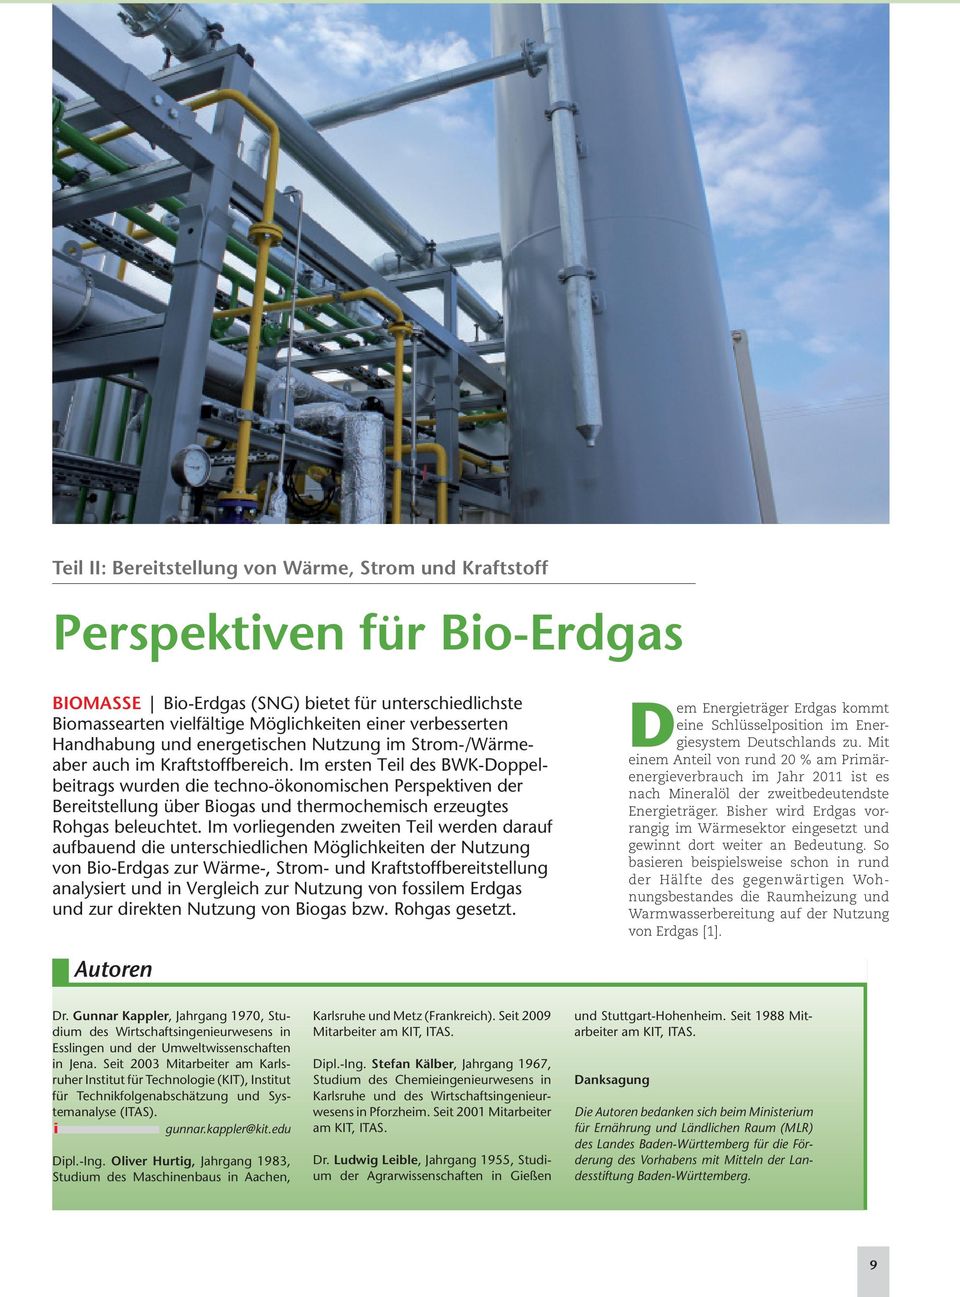 Im ersten Teil des BWK-Doppel - beitrags wurden die techno-ökonomischen Perspektiven der Bereitstellung über Biogas und thermochemisch erzeugtes Rohgas beleuchtet.